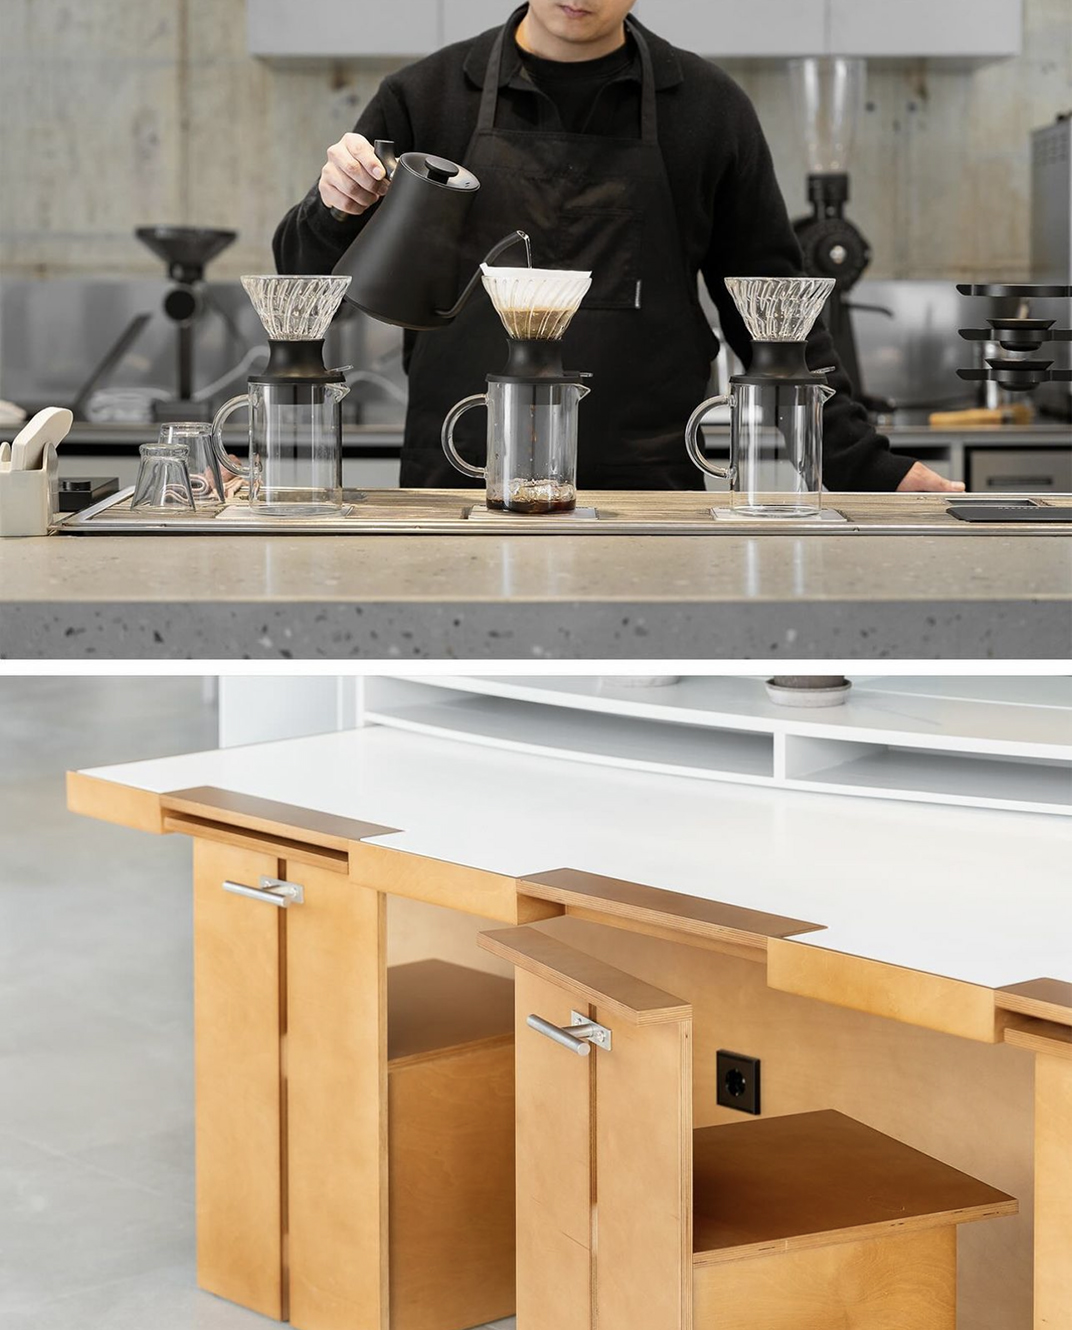 建筑师设计的咖啡、面包店空间502 Coffee Roasters 韩国 首尔 深圳 上海 北京 广州 武汉 咖啡店 餐饮商业 logo设计 vi设计 空间设计